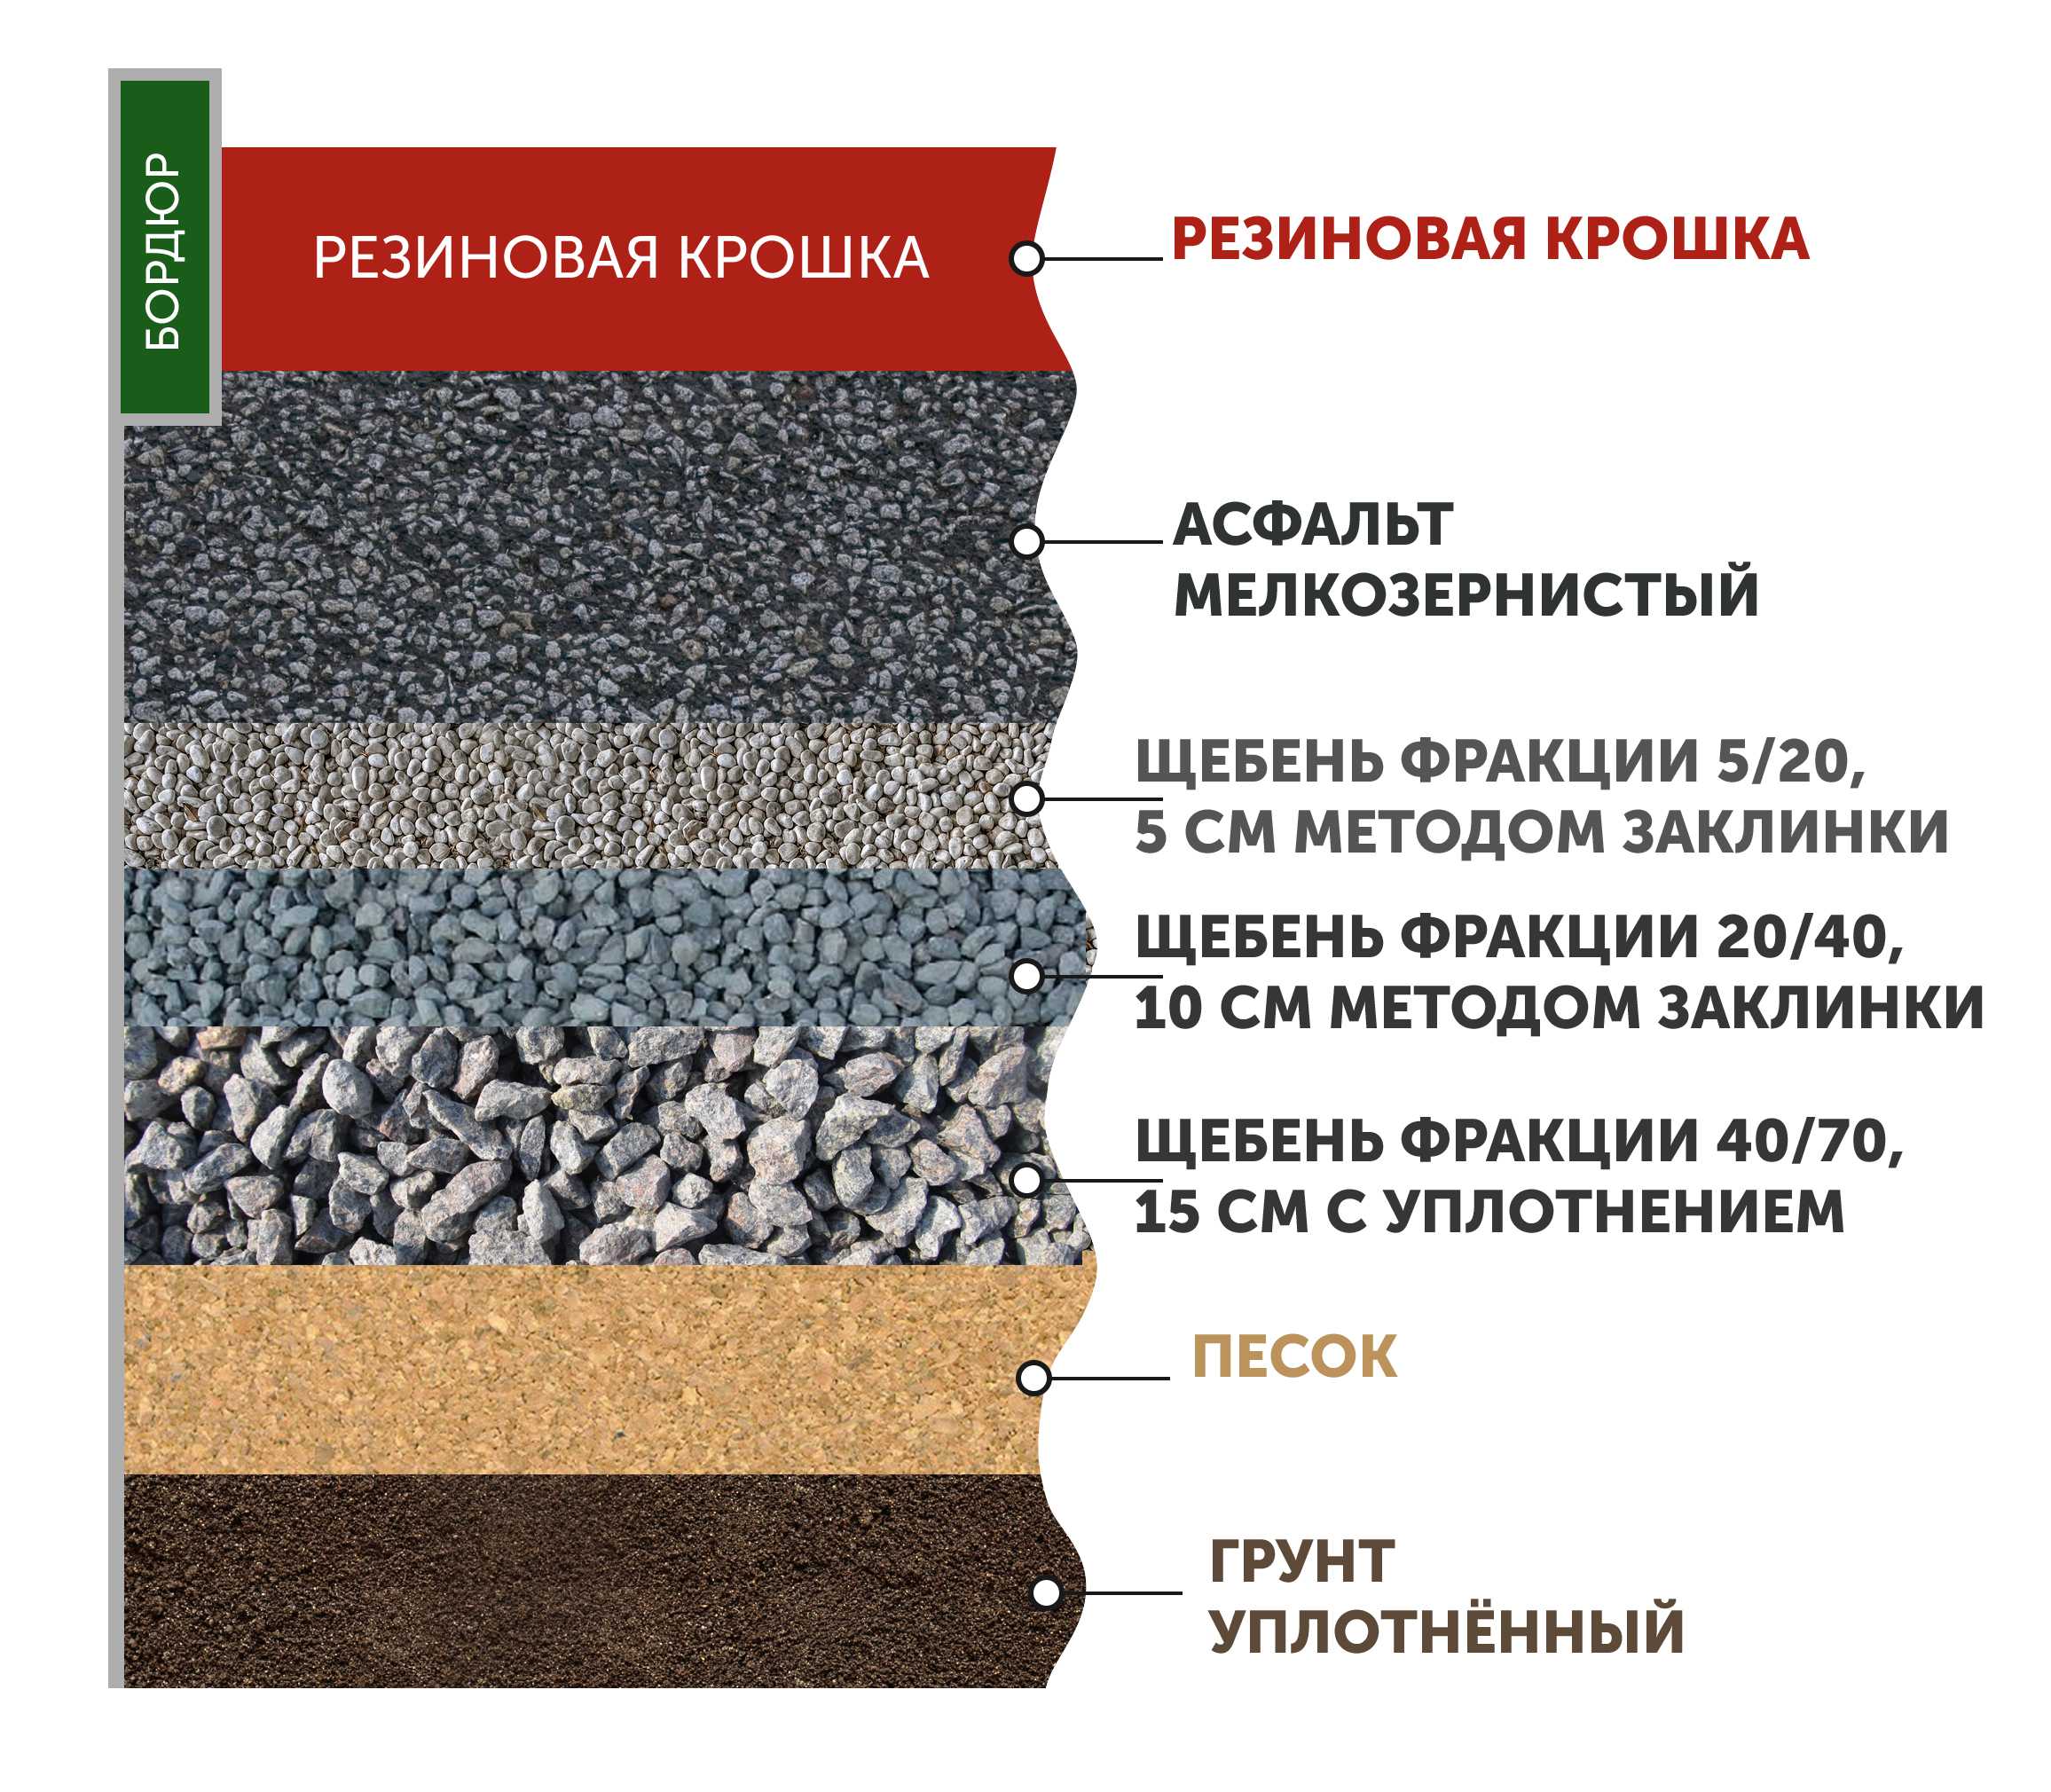 К вопросу о ремонте асфальтовых покрытий - асфальтирование в москве